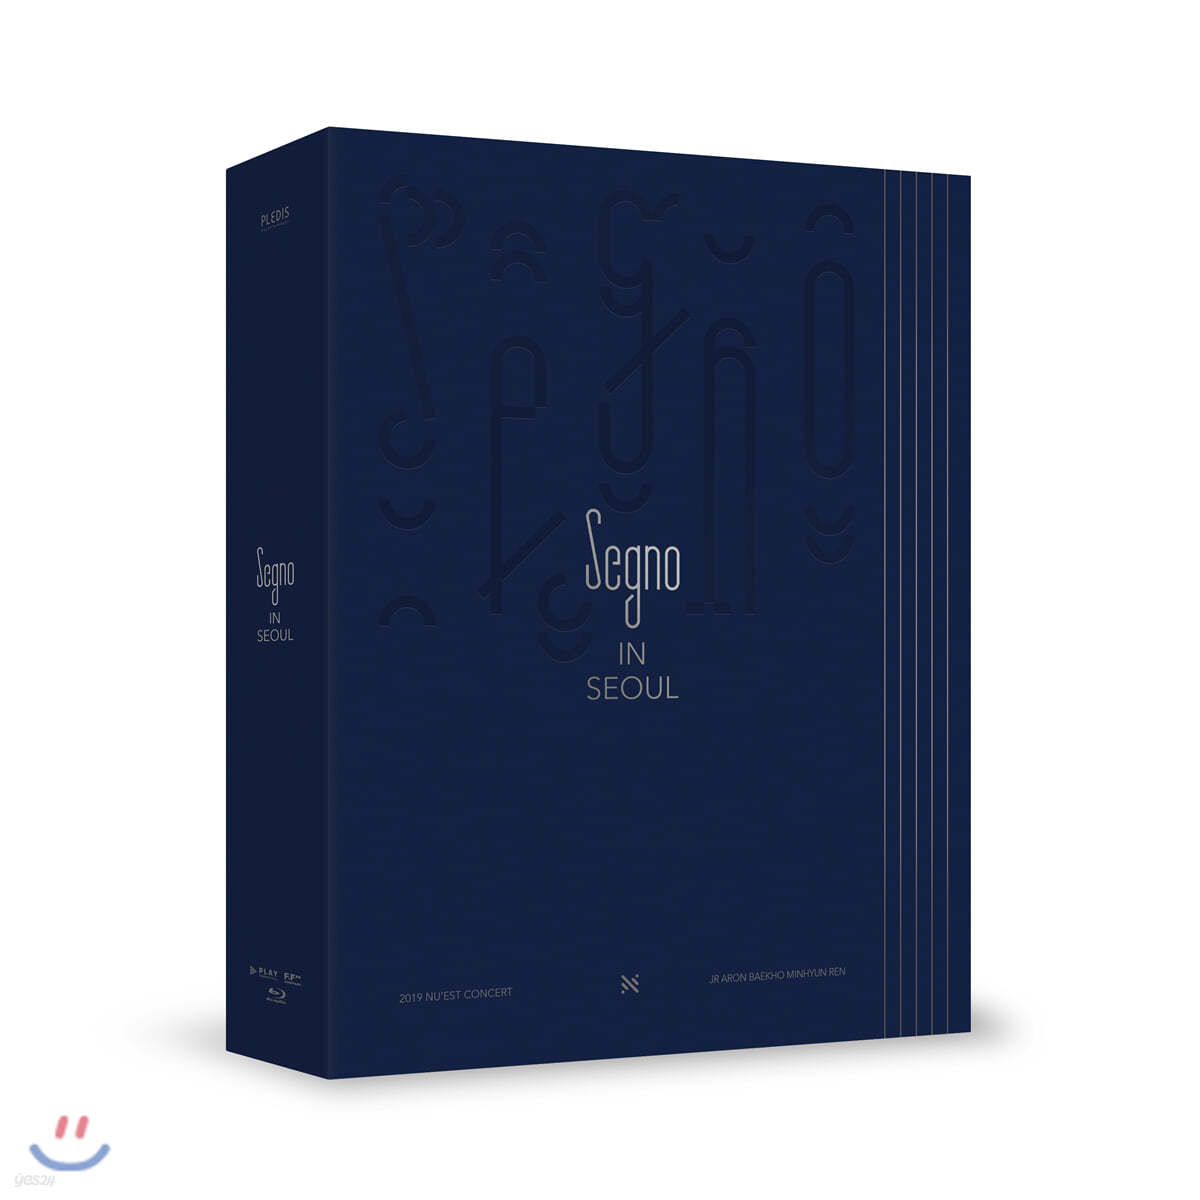 뉴이스트 (NU&#39;EST) - 2019 NU&#39;EST Concert [Segno] In Seoul Blu-Ray